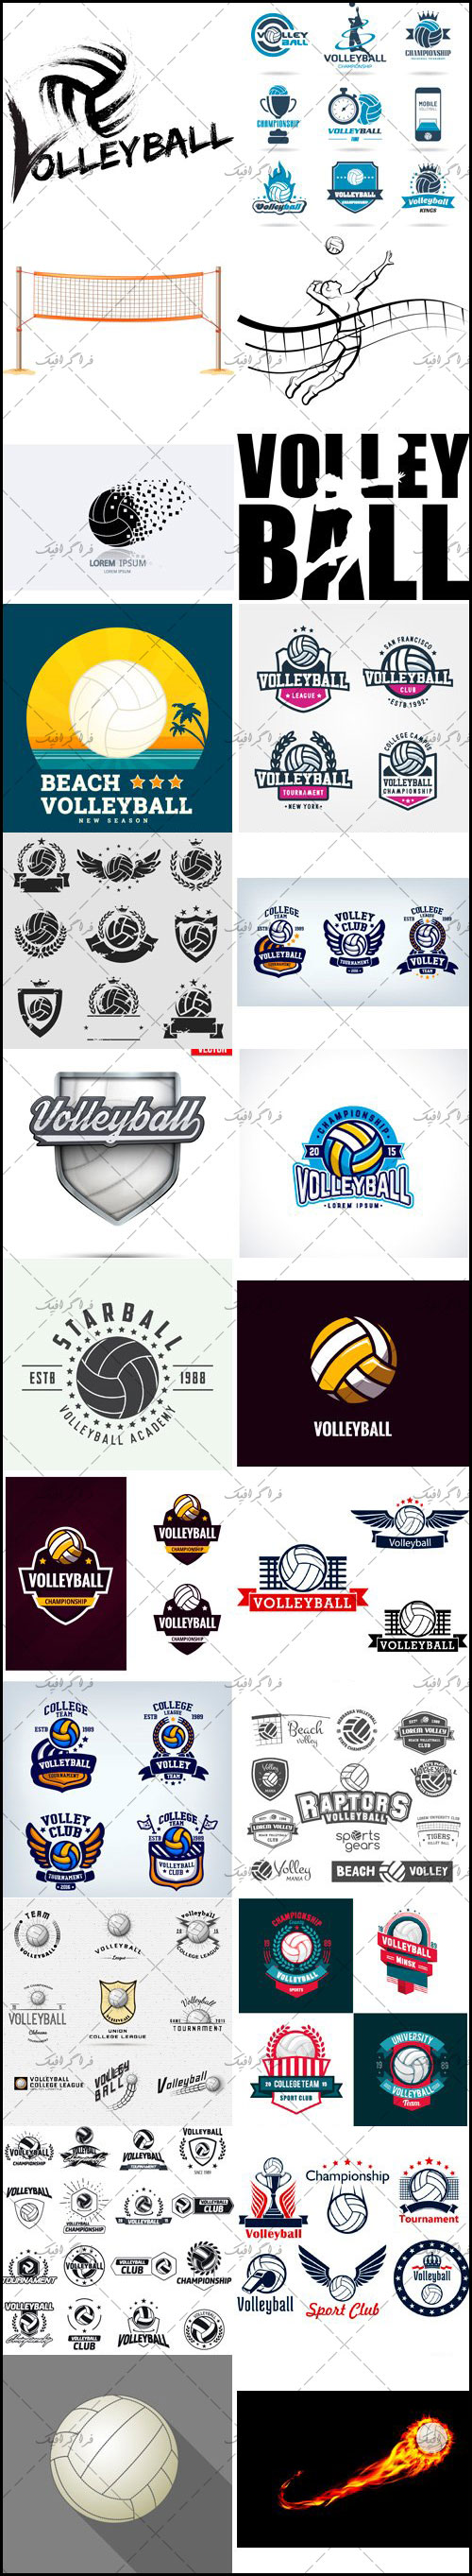 دانلود مجموعه لوگو های ورزش والیبال